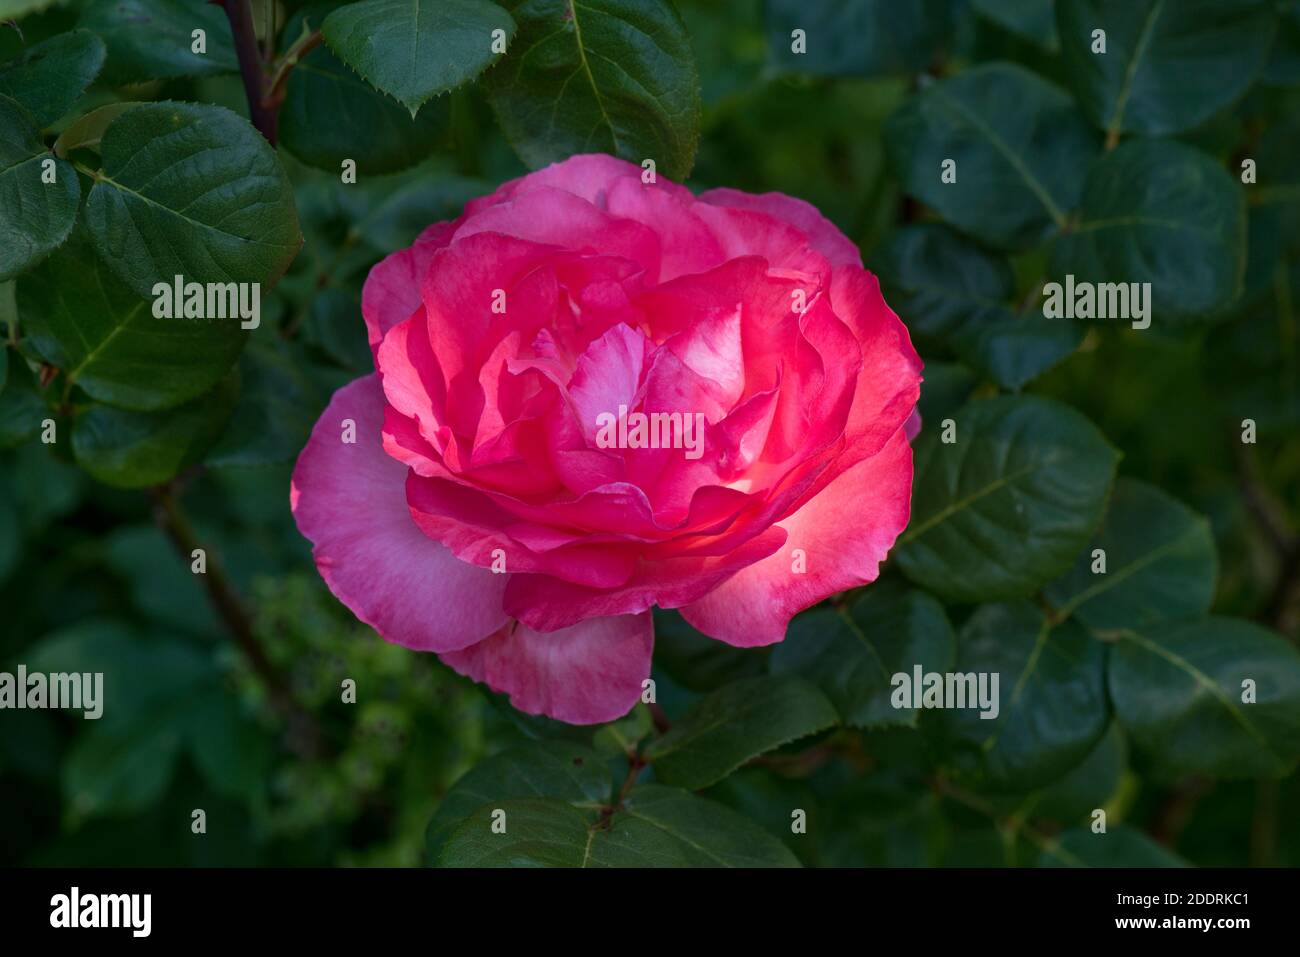 Una sola rosa flor (Rosa sp.) de vuelta iluminada y mostrando sus colores rosa-rosa contra un fondo de hojas, Berkshire, junio Foto de stock